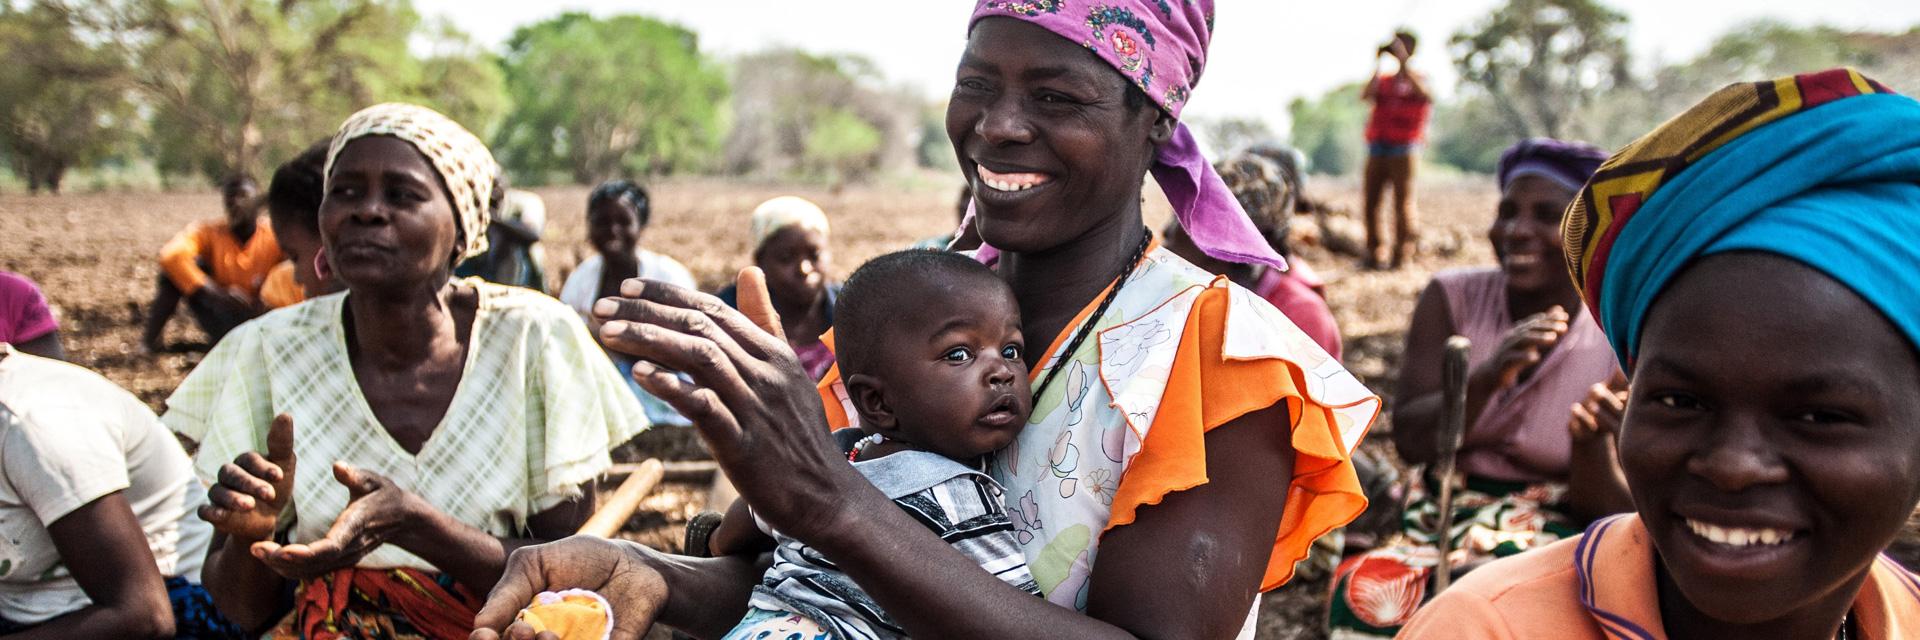 Unterstützung beim Klimawandel in Mosambik